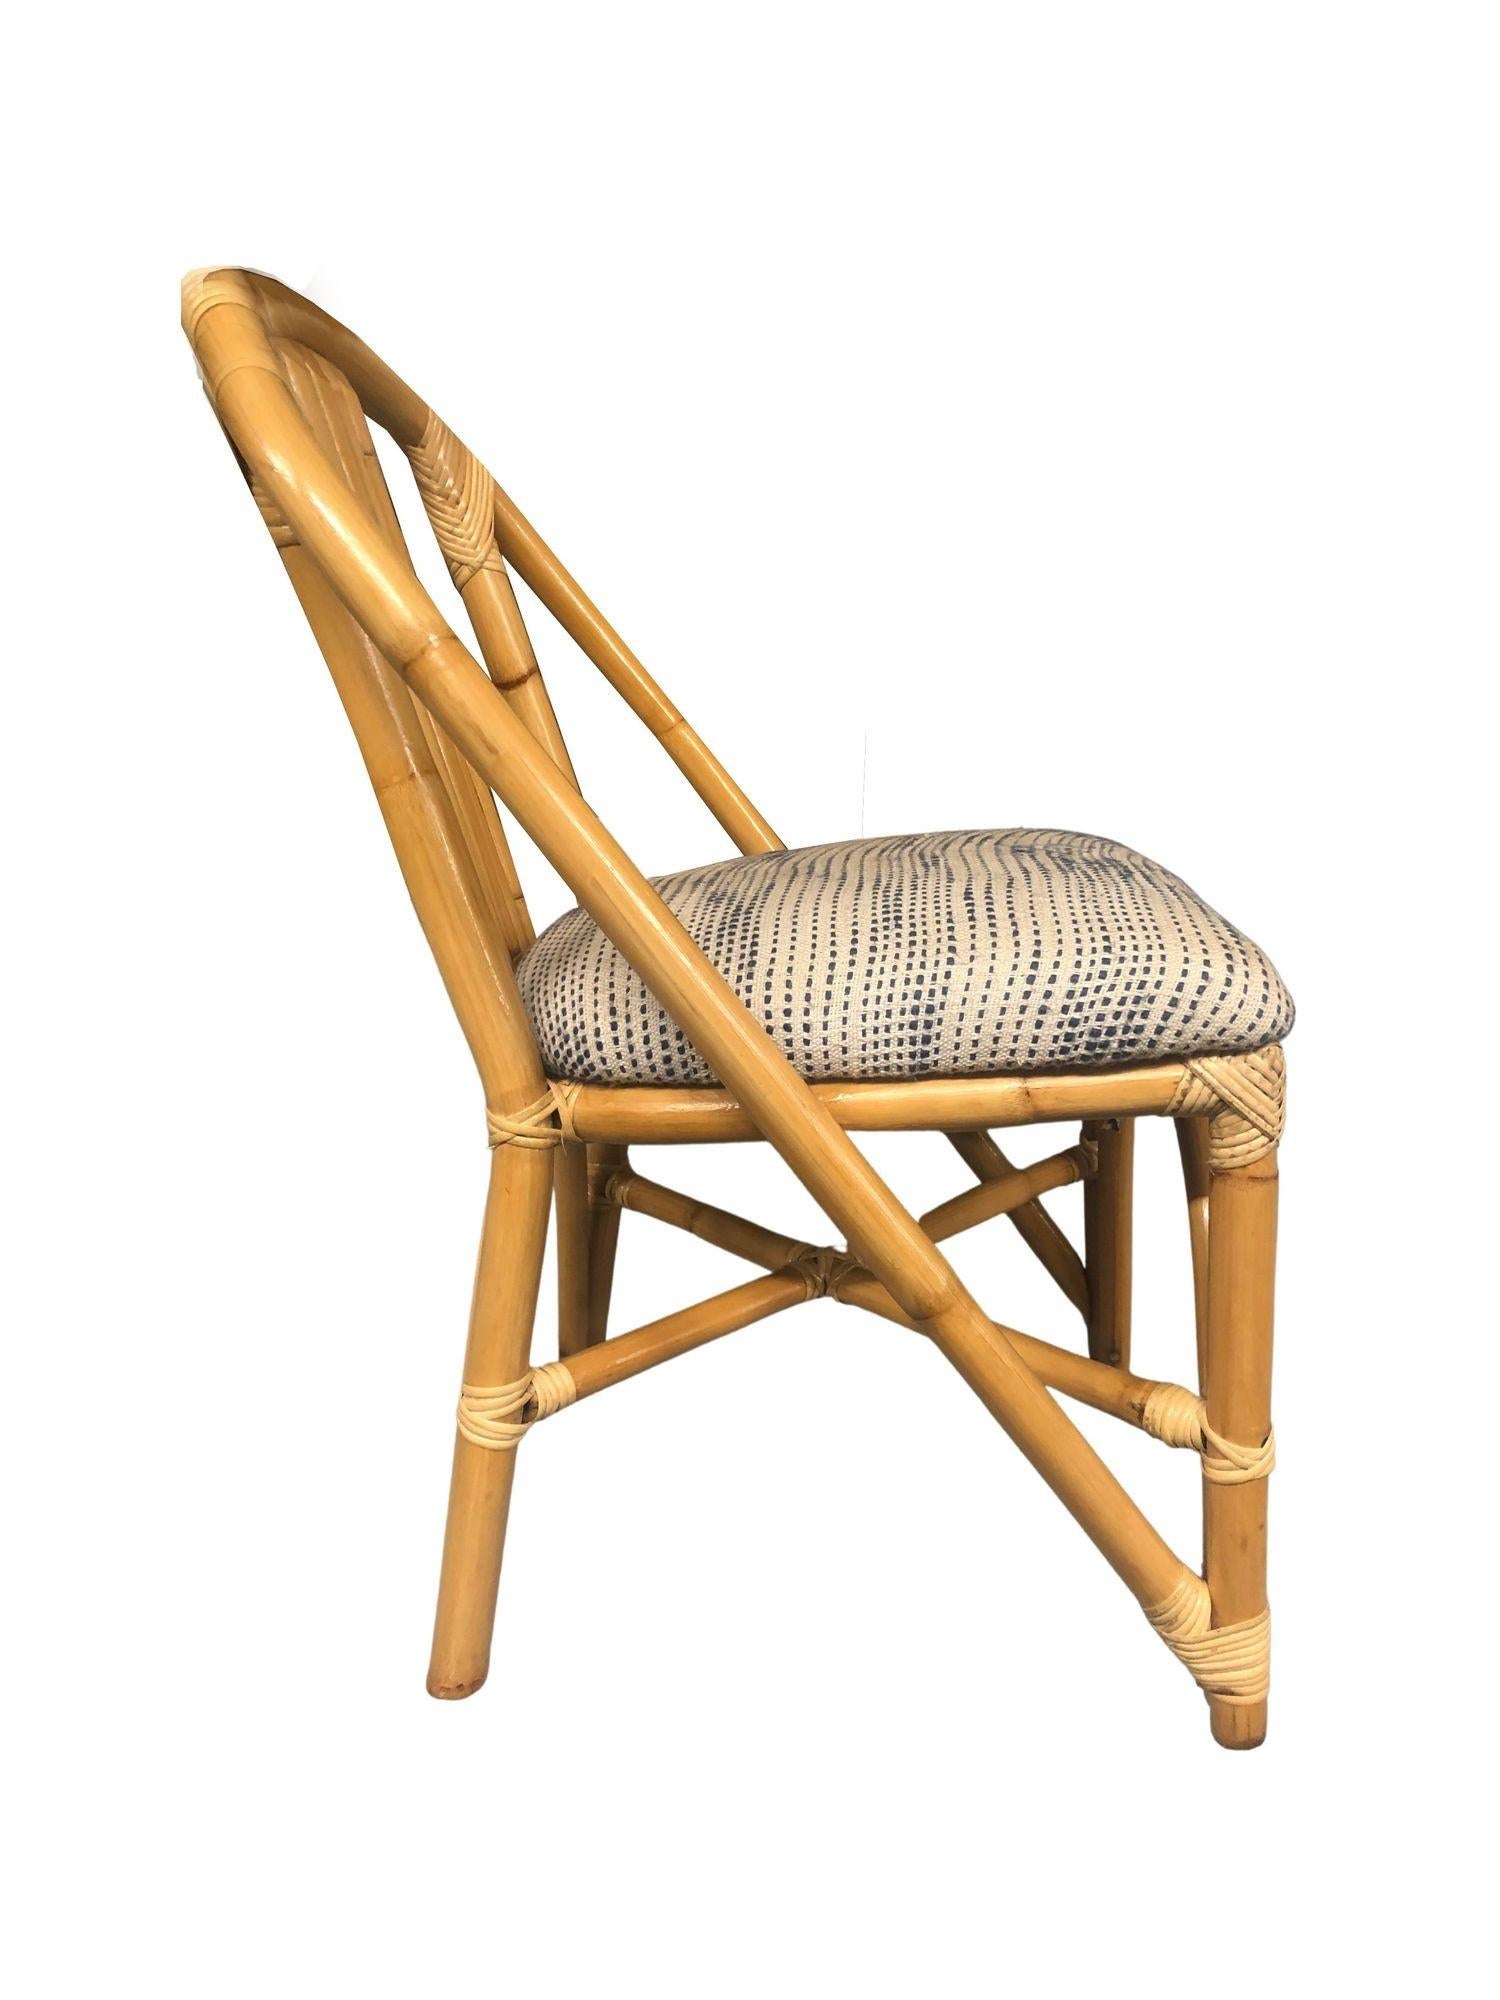 Chaise d'appoint en rotin restaurée, datant du milieu du siècle dernier, présentant un dossier à 5 brins avec un arc en fer à cheval qui s'étend des pieds avant autour de l'ensemble de la chaise pour former un dossier sculptural. Cette chaise